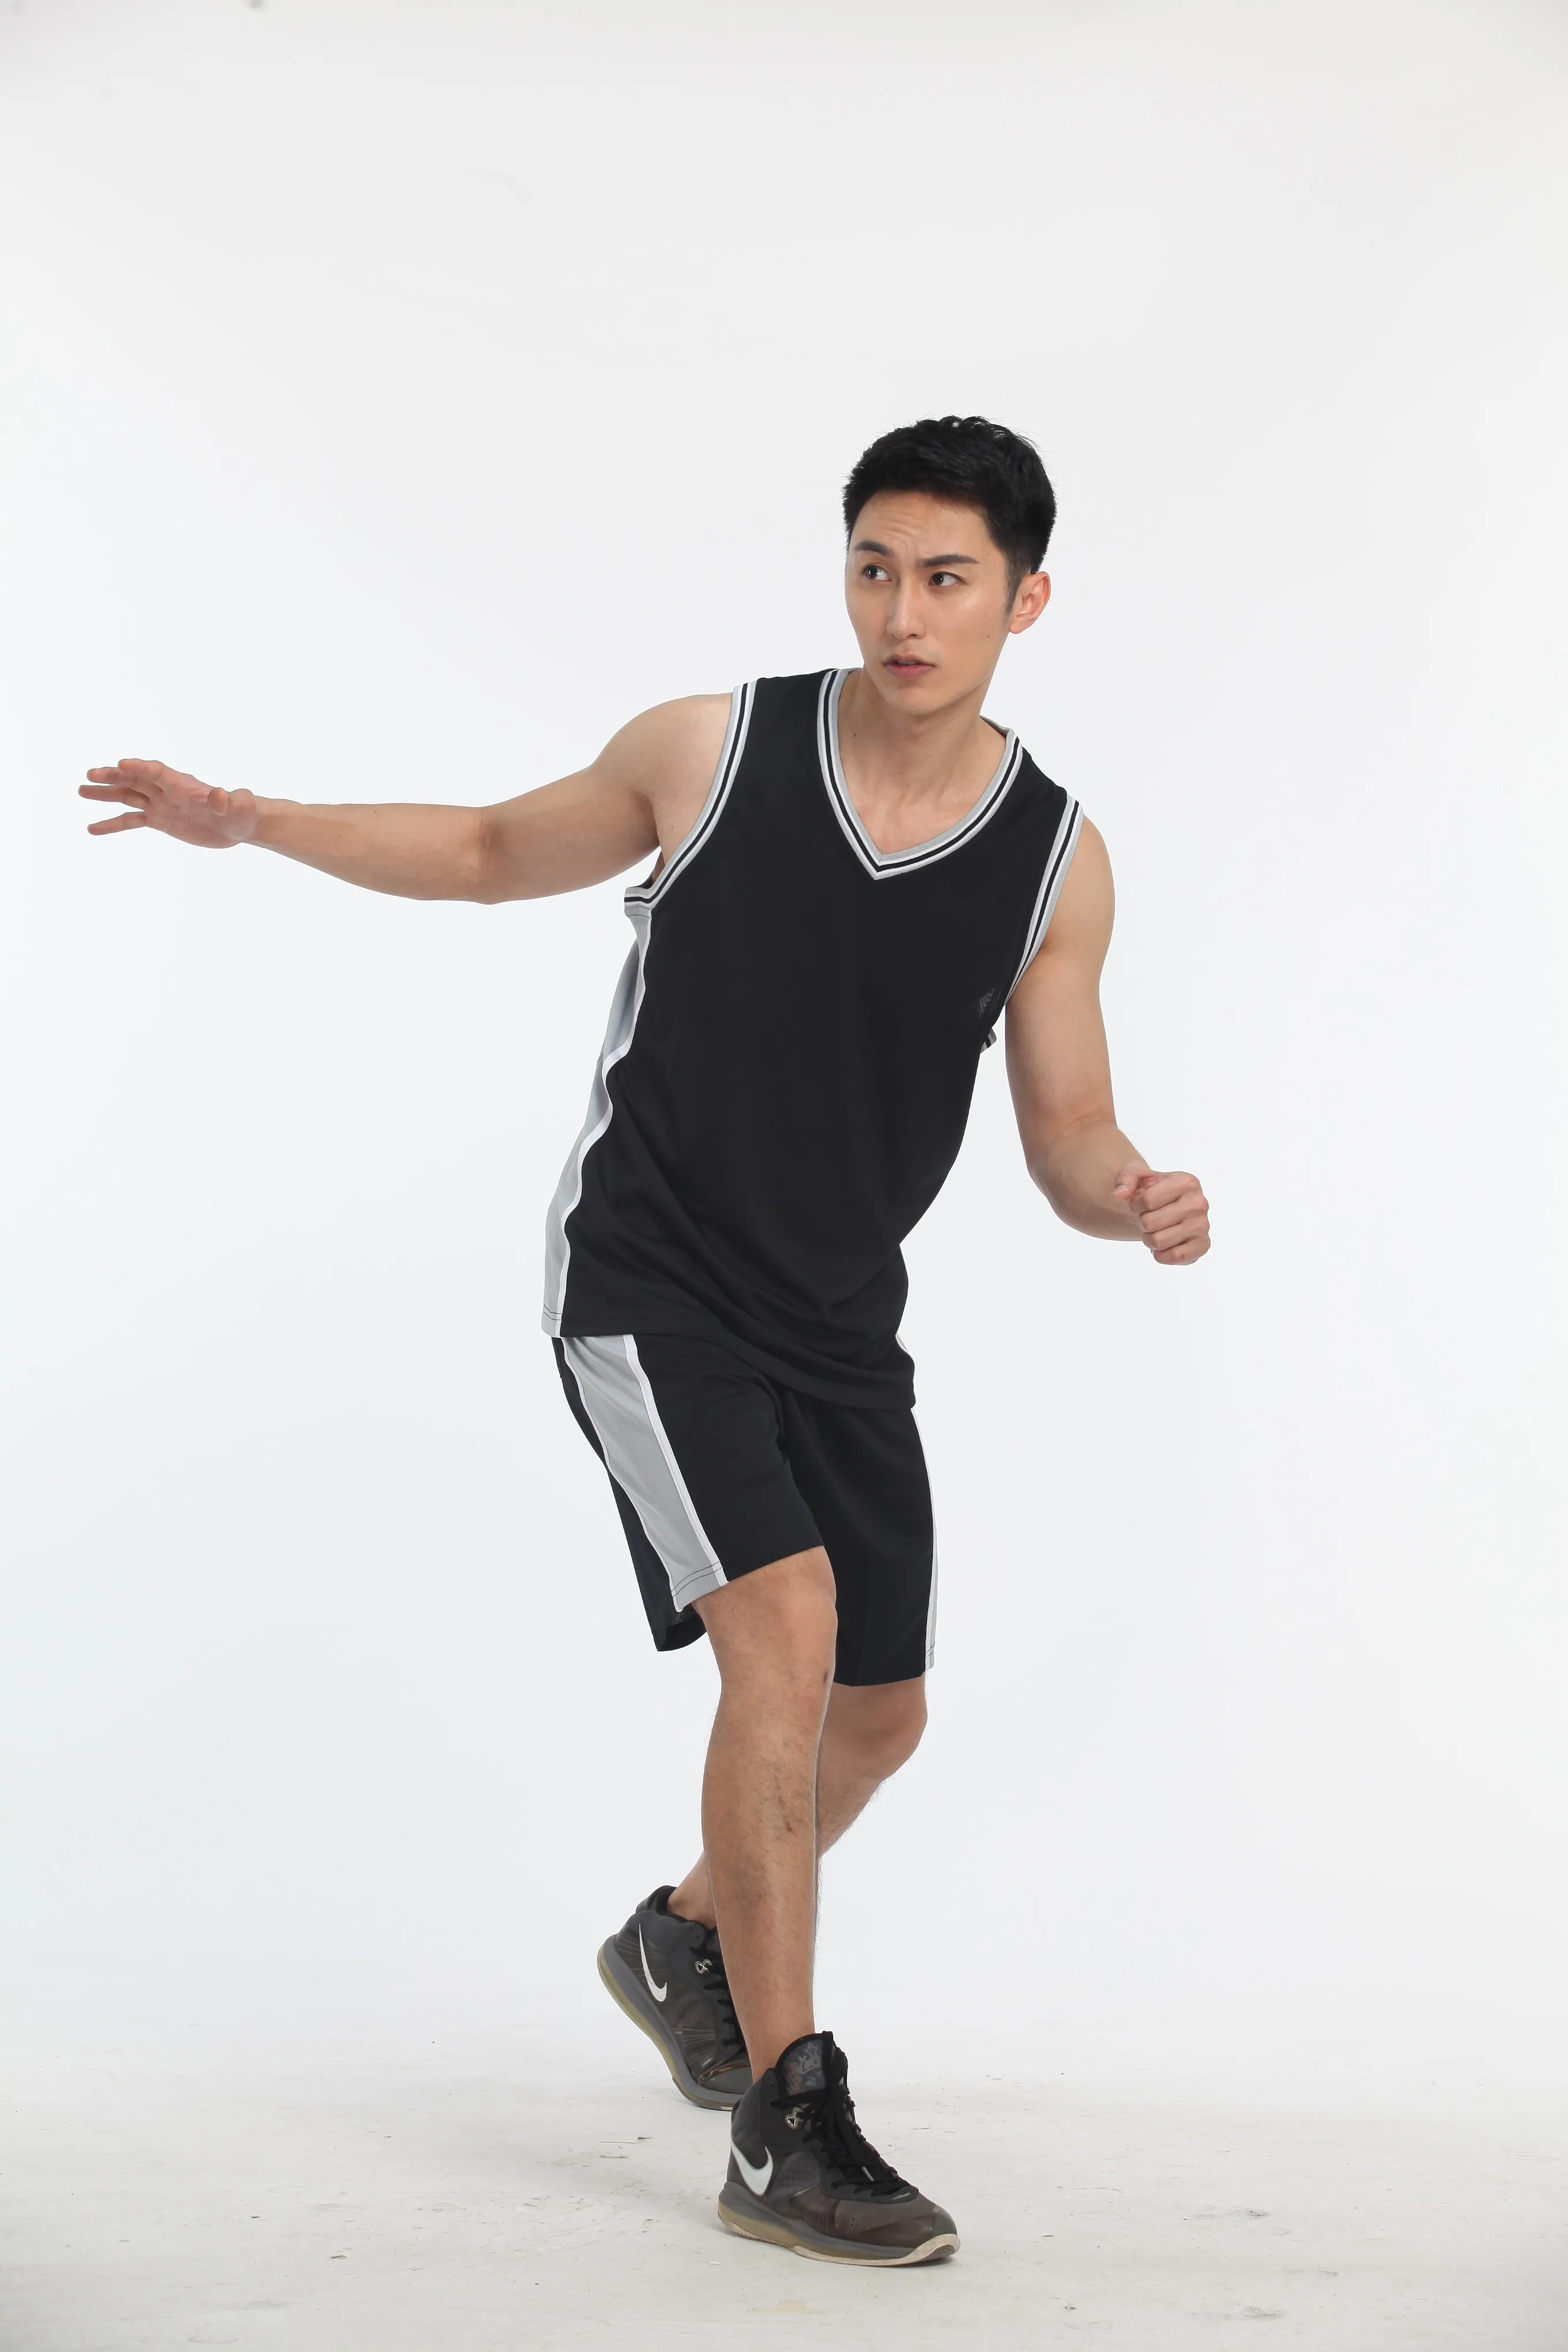 LiDong новые баскетбольные майки спортивная форма без рукавов рубашки и шорты команды тренировочные комплекты, самостоятельная настройка доступны 102